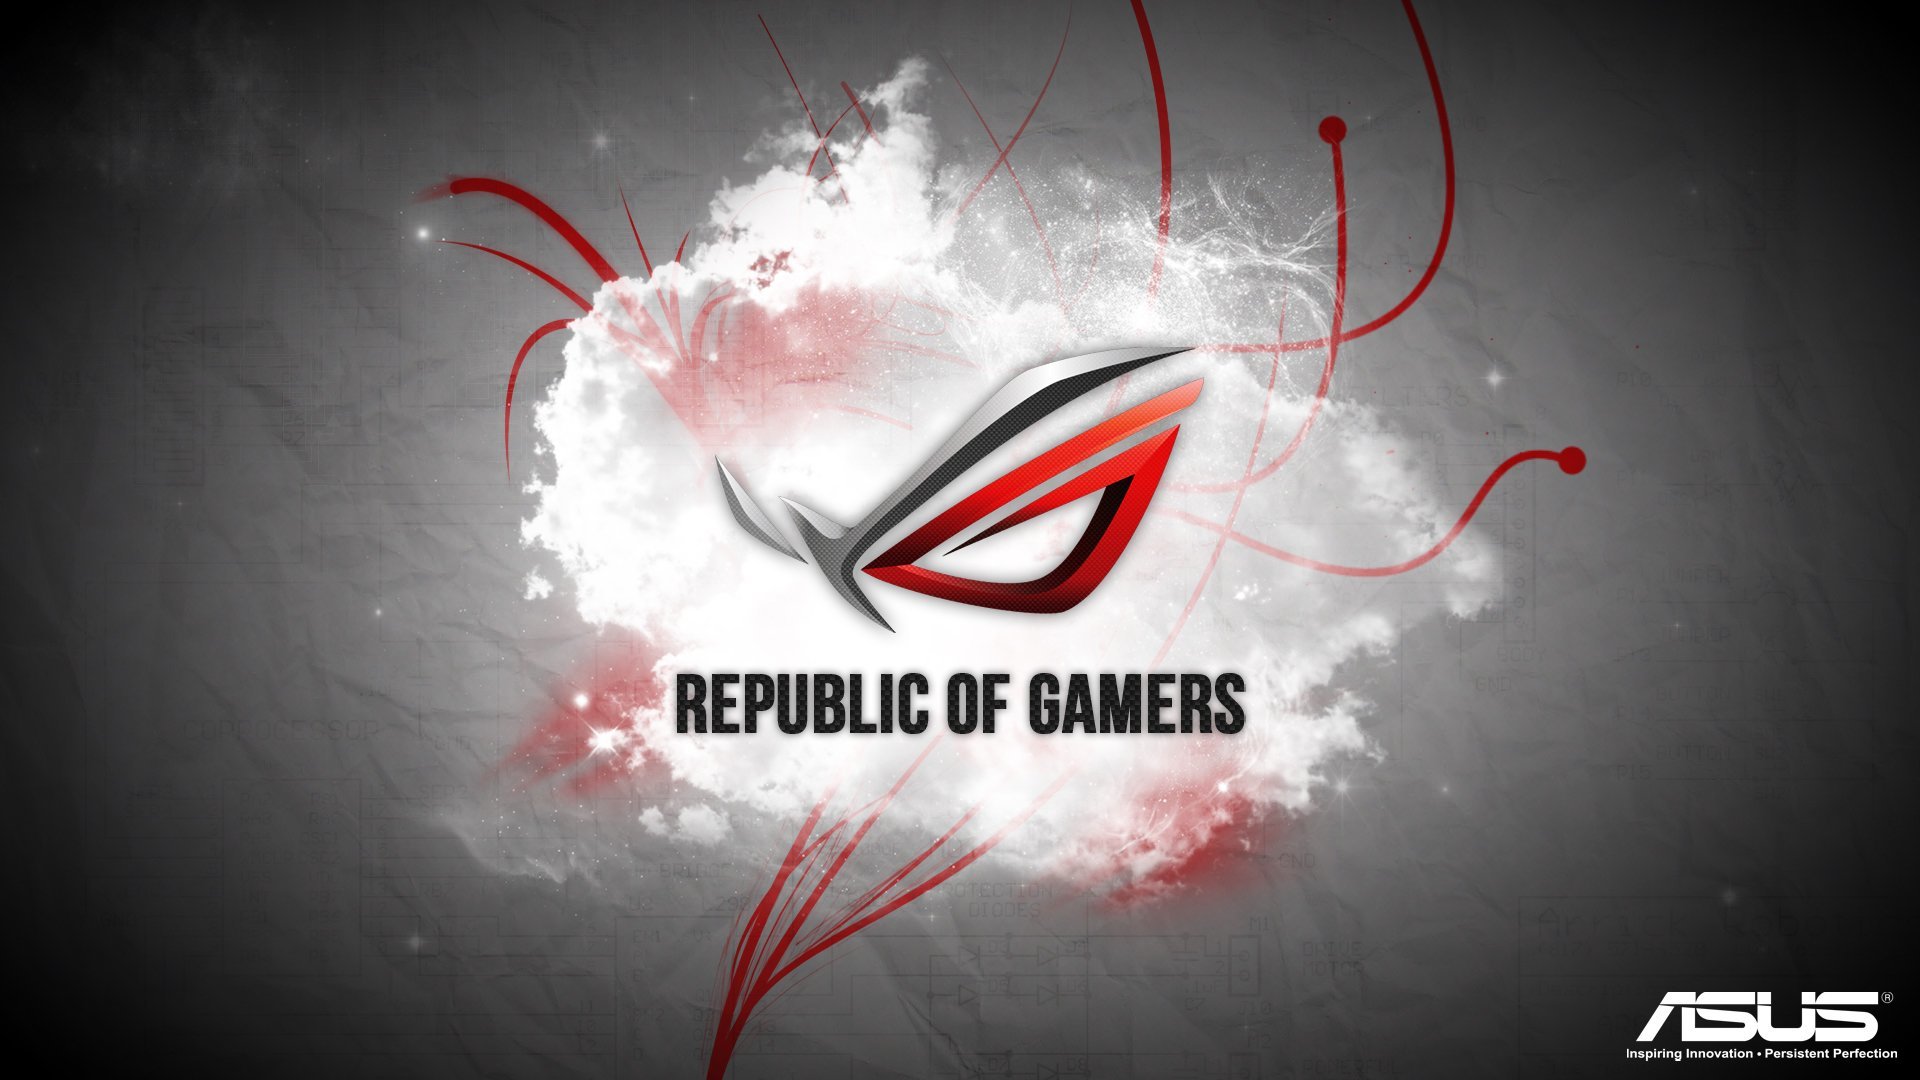 Asus Wallpapers Full Hd Desktop Backgrounds - Republic Of Gamers - HD Wallpaper 